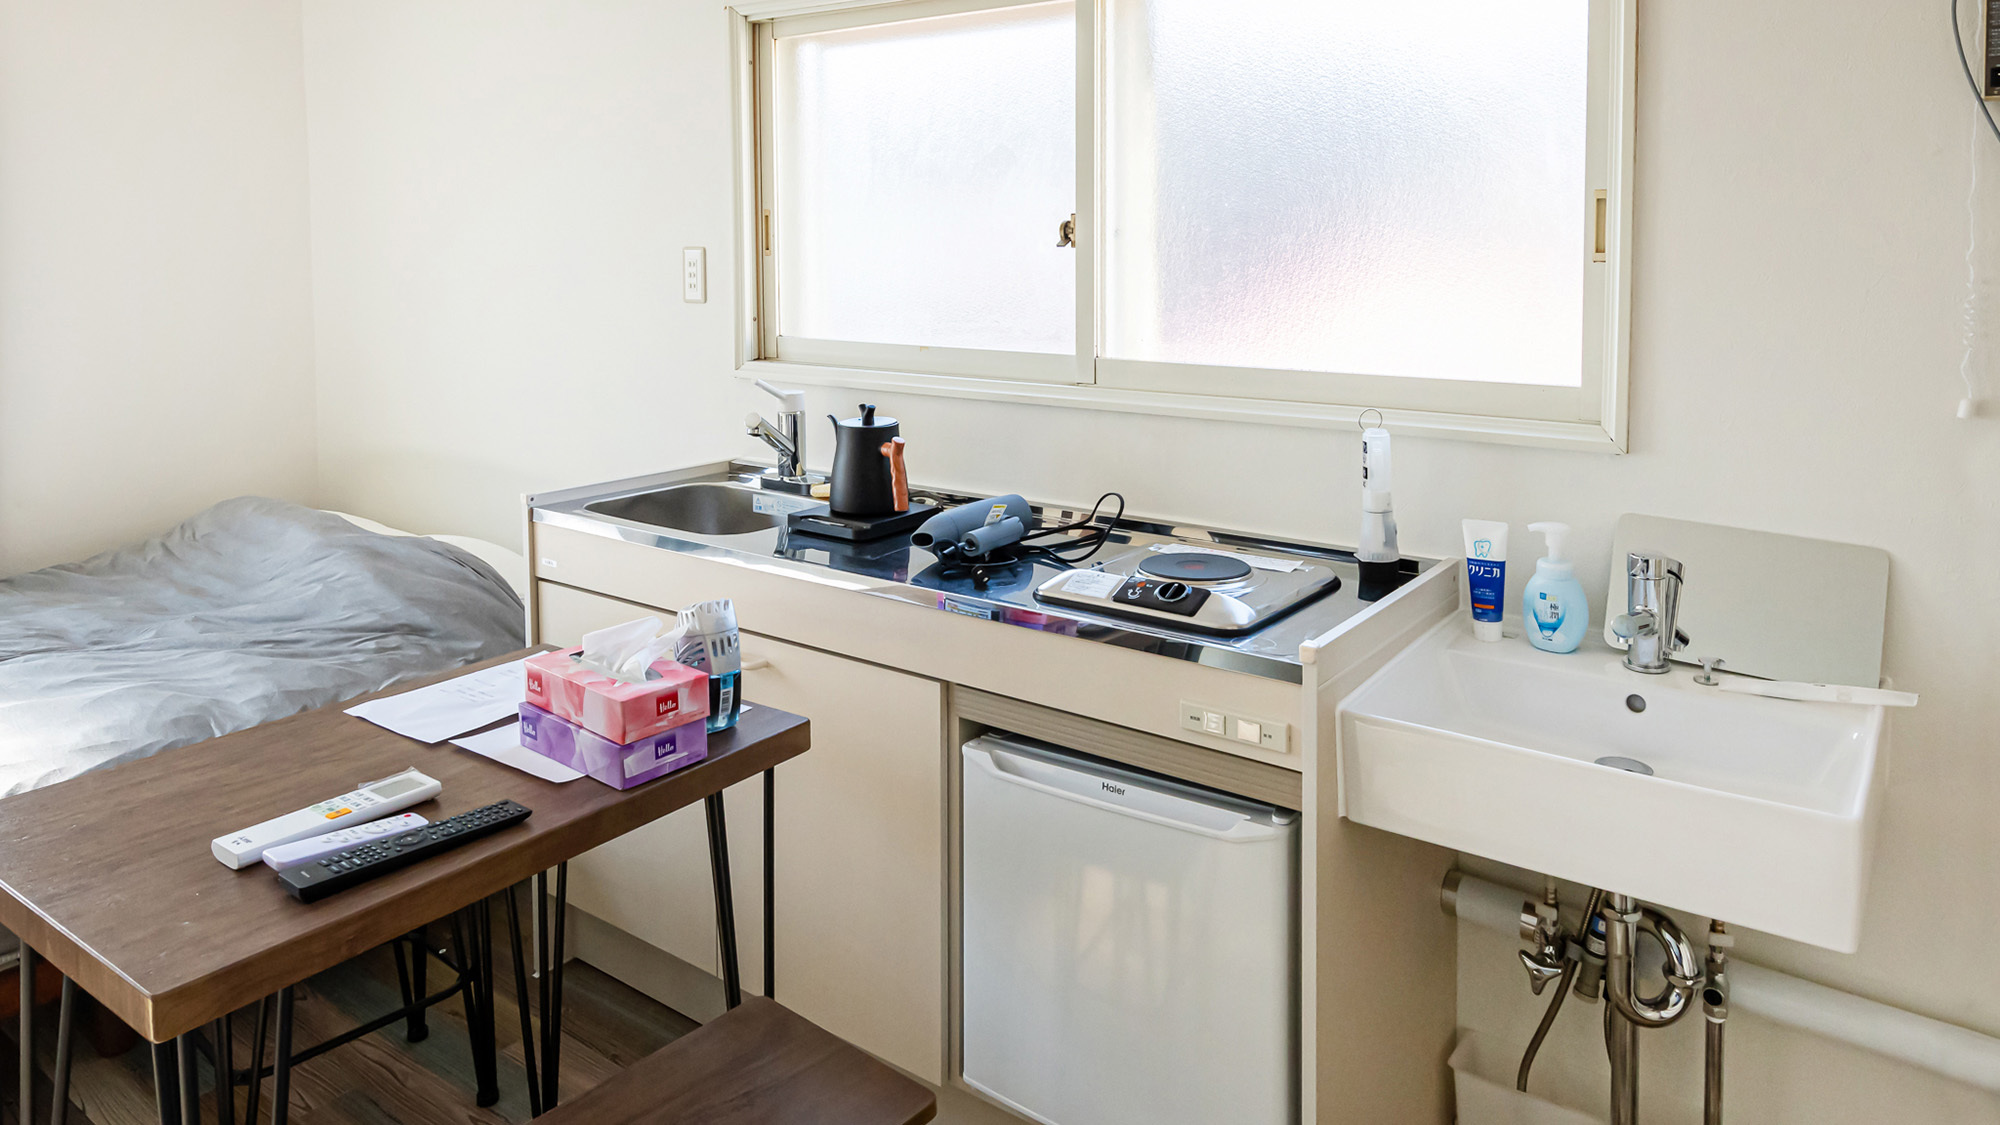 ・【客室一例】簡易キッチンと洗面の水回りは一カ所にレイアウト